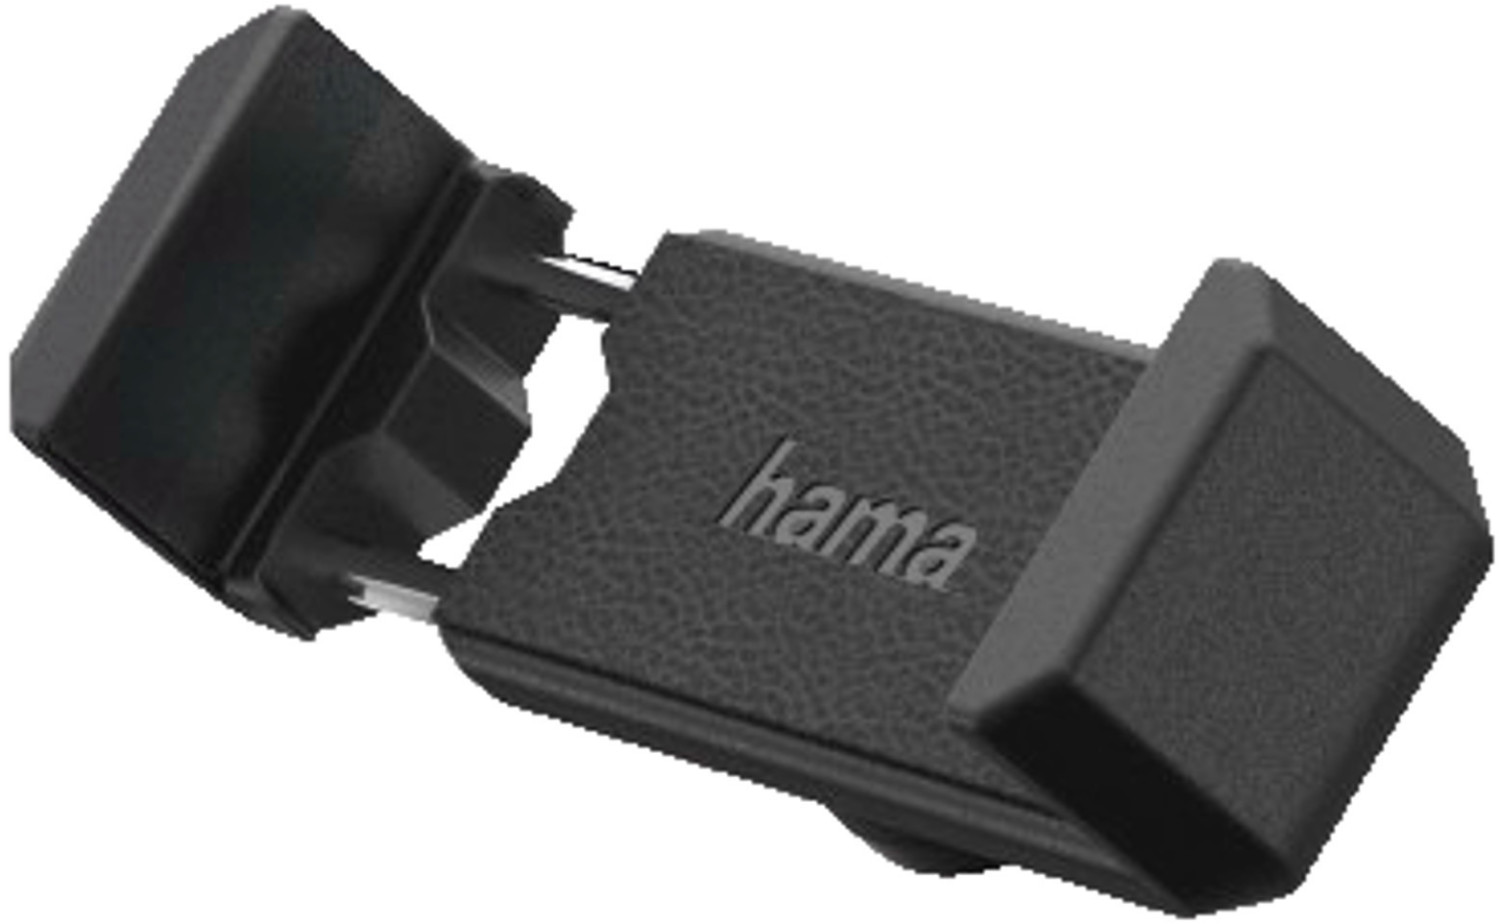 Hama Smartphone-Halterung »Auto Handyhalterung Magnet mit